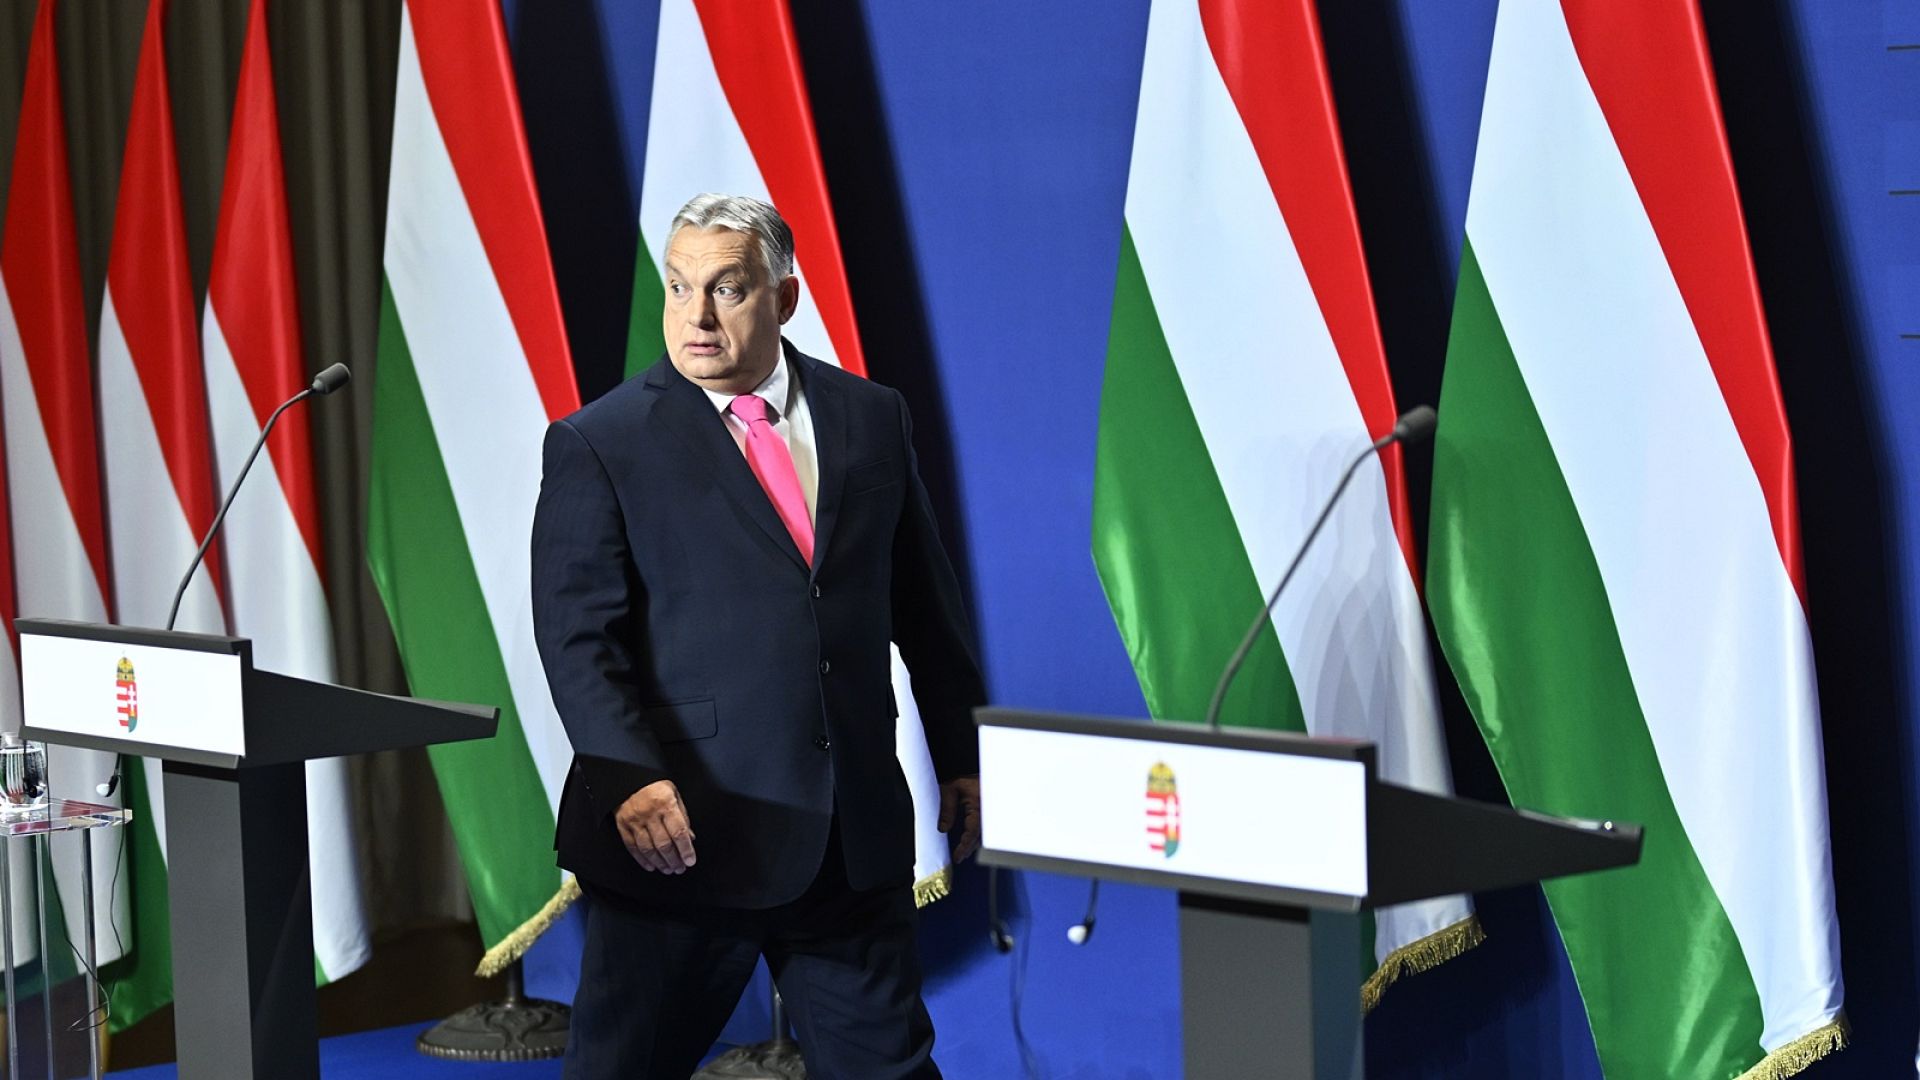 AP üyeleri: Macar Hükümeti AB değerlerini ve fonlarını tehdit ediyor